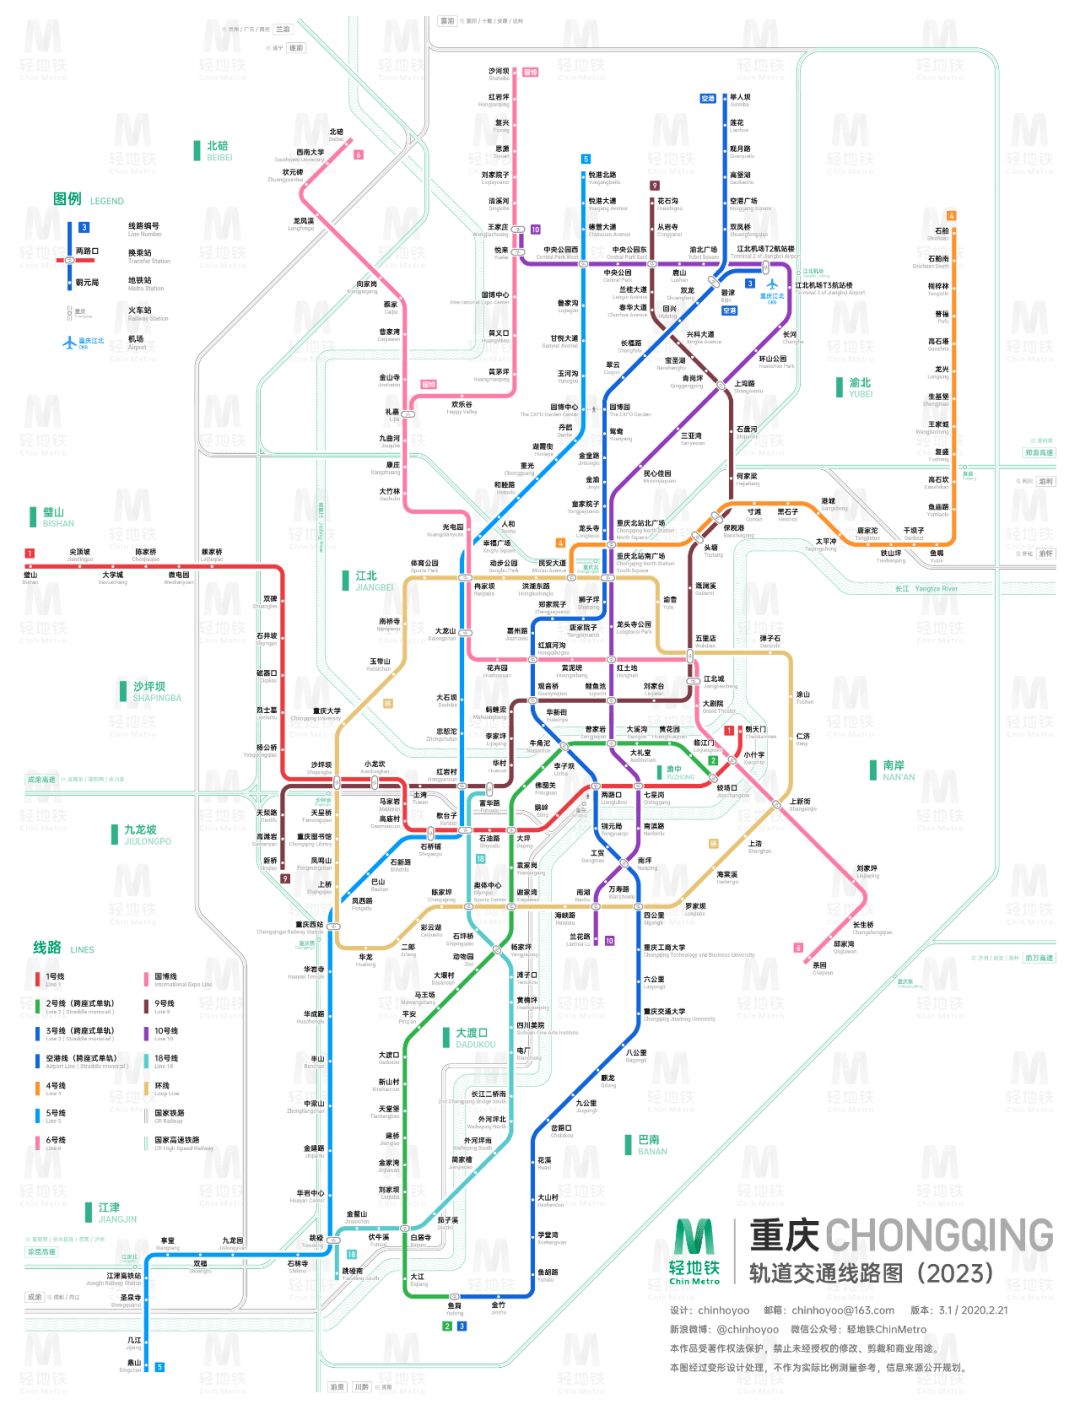 重庆轨道交通运营线路共有10条,包括1,2,3,4,5,6,10号线,环线,国博线